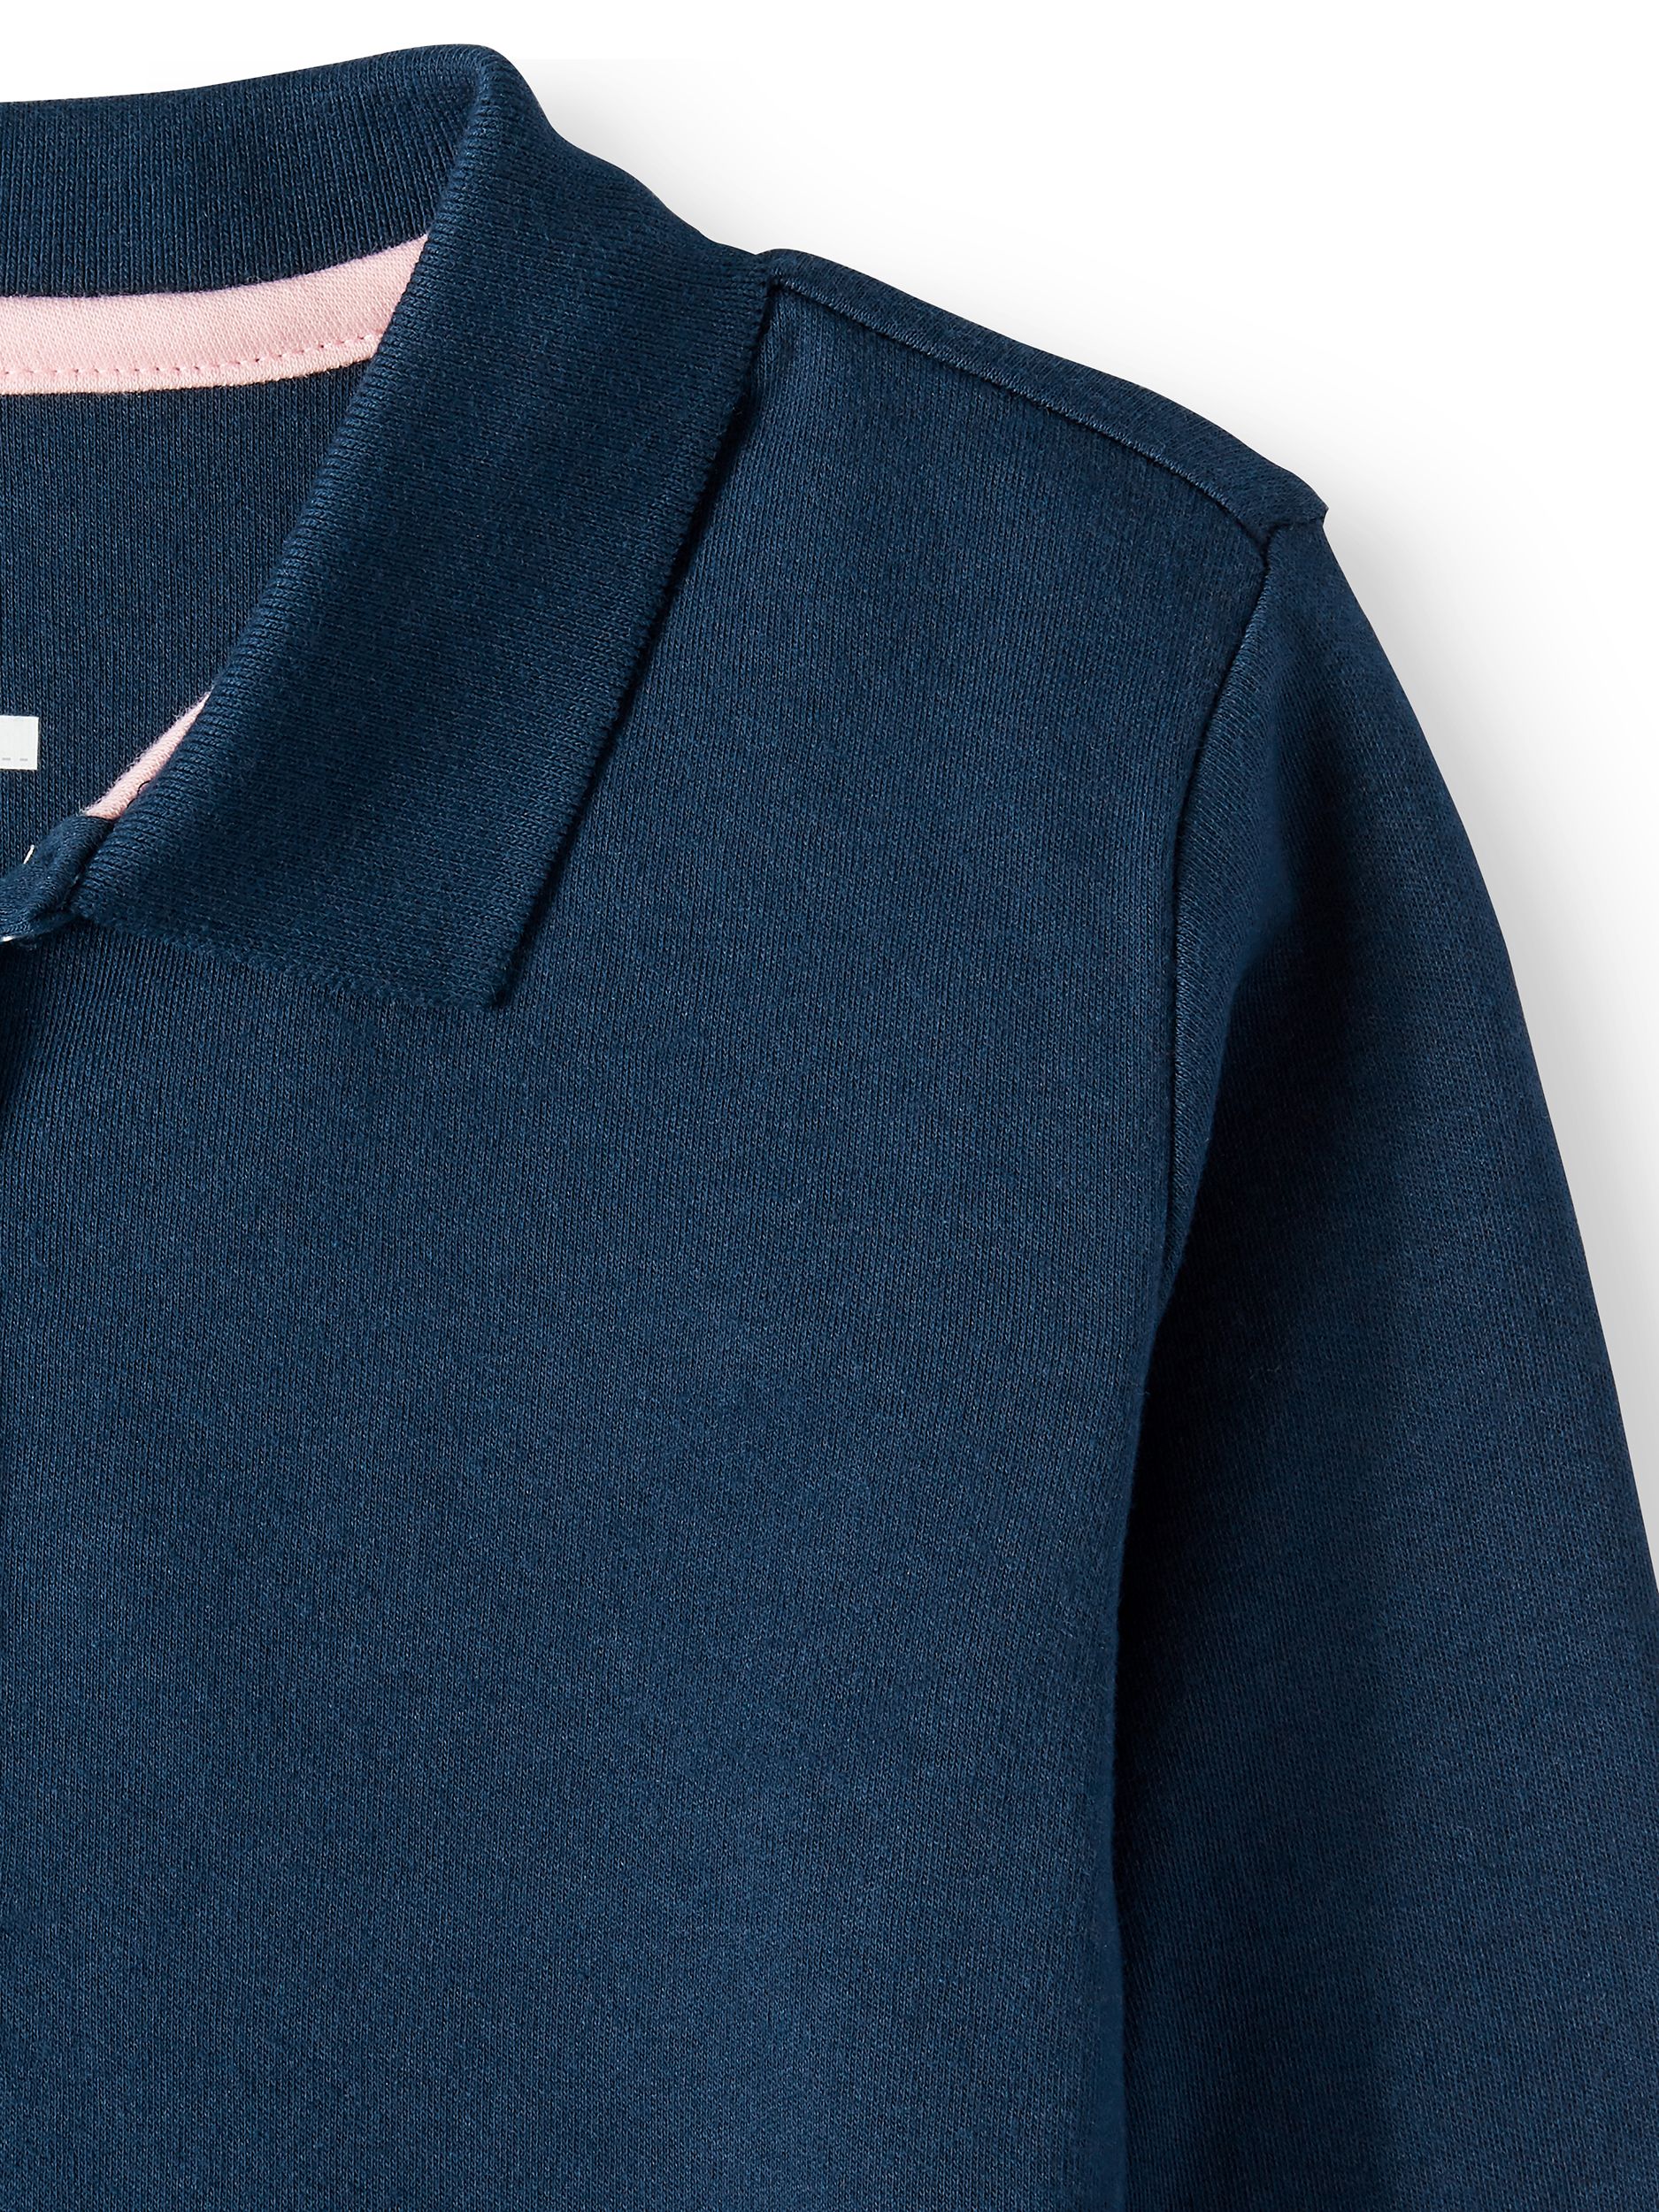 Wonder Nation Girls School Uniform Long Sleeve Interlock Polo Shirt, 4-Pack Value Bundle, Sizes 4-18 - image 4 of 7